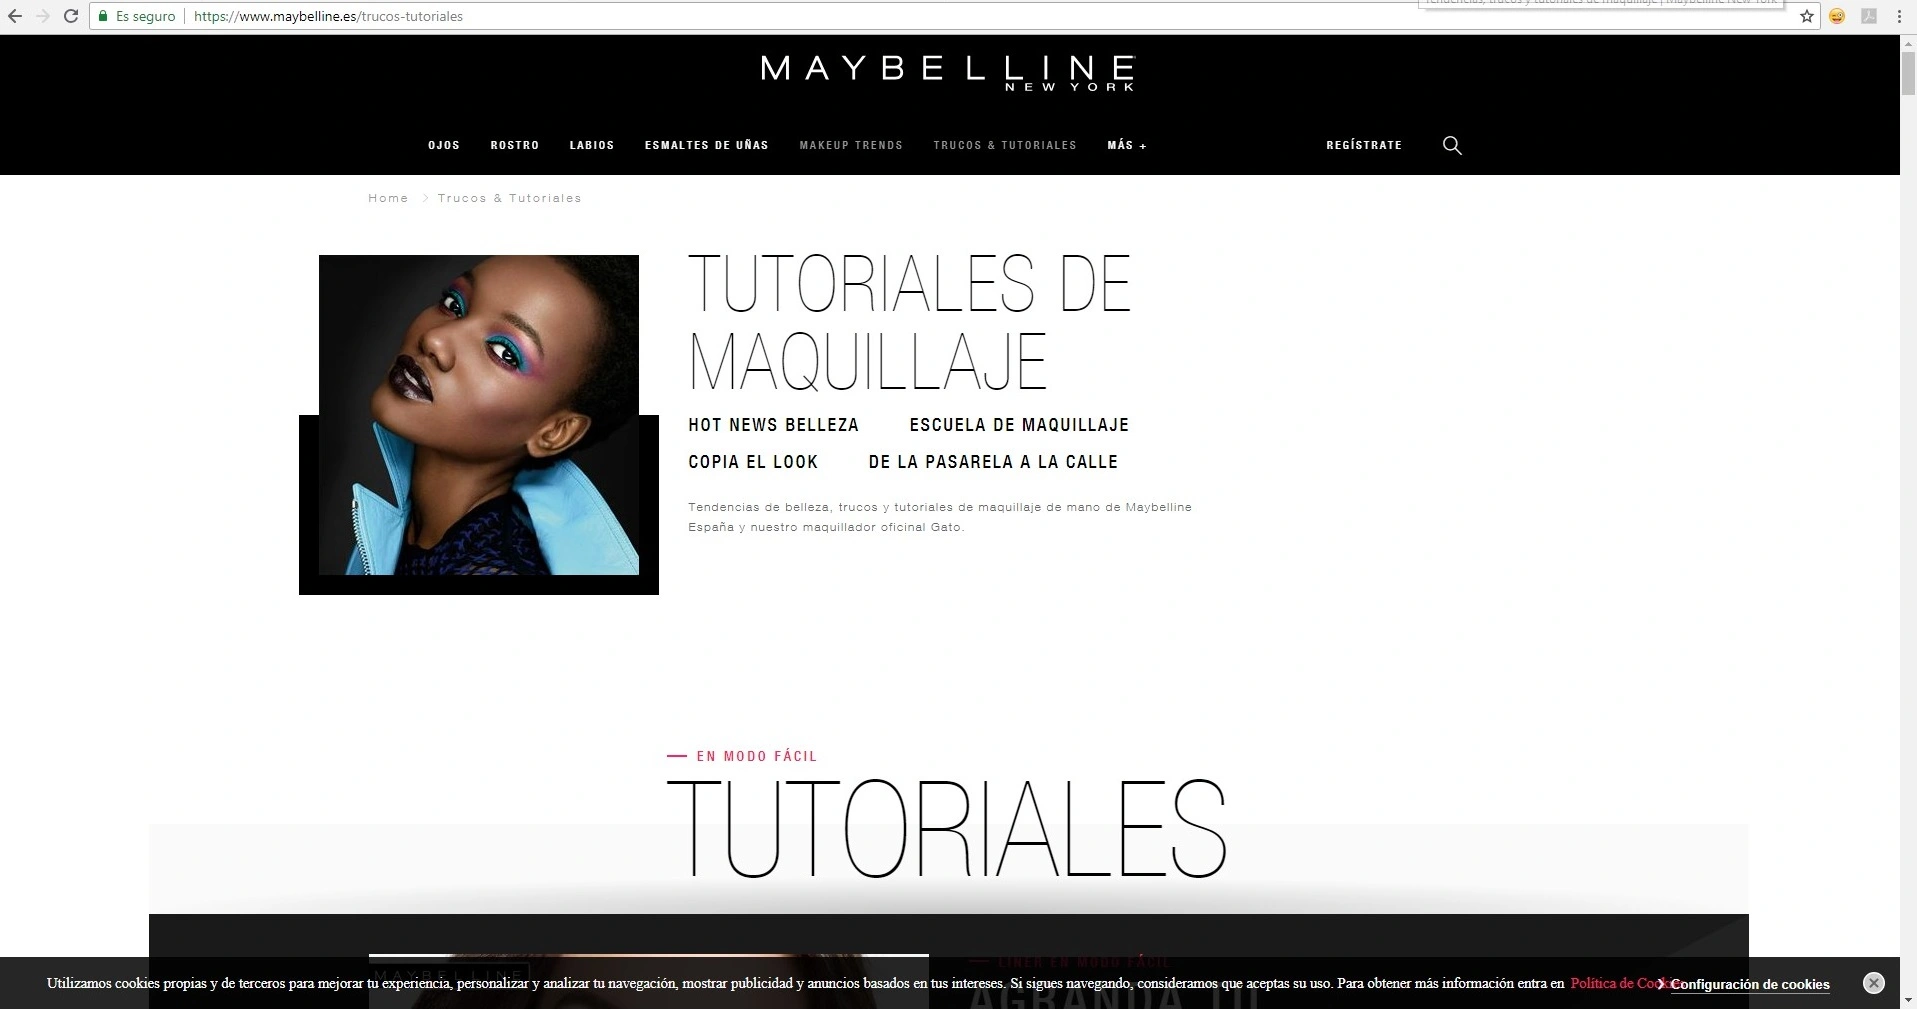 estrategia de contenidos en blog de maybelline